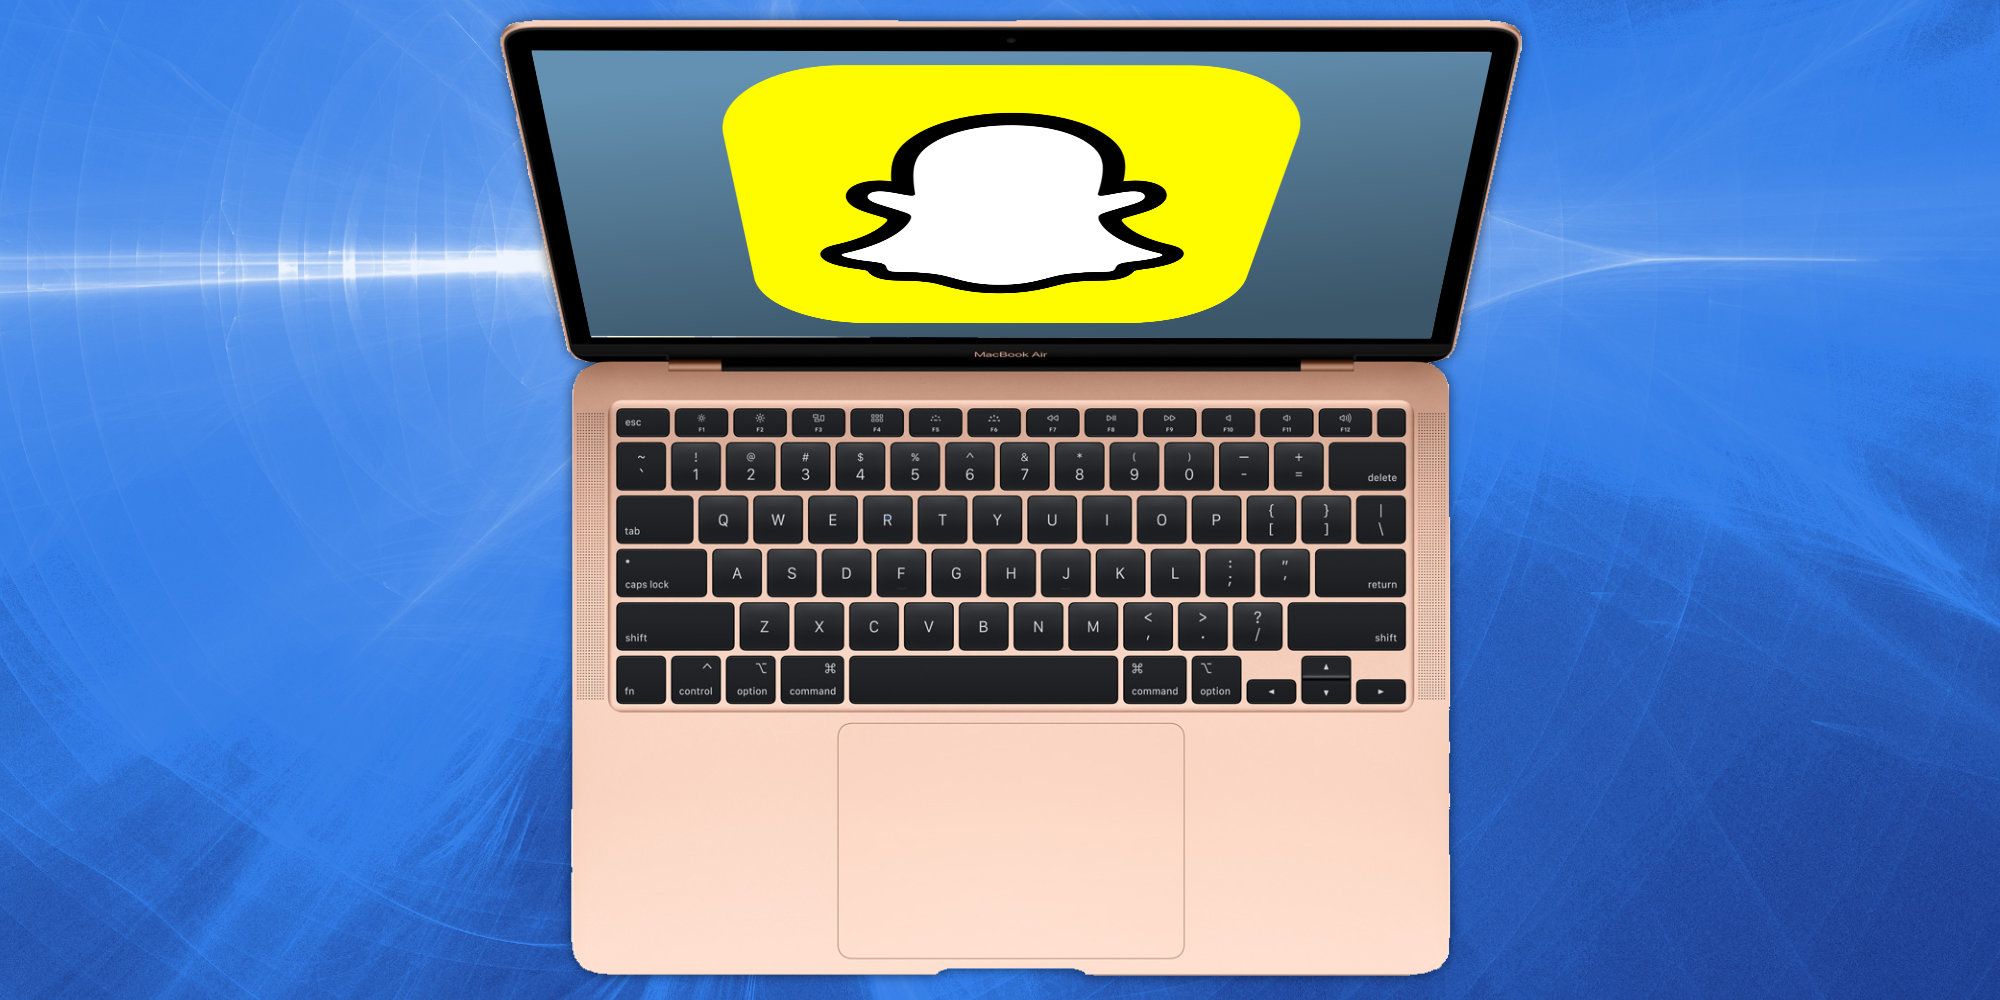 Snapchat On Mac